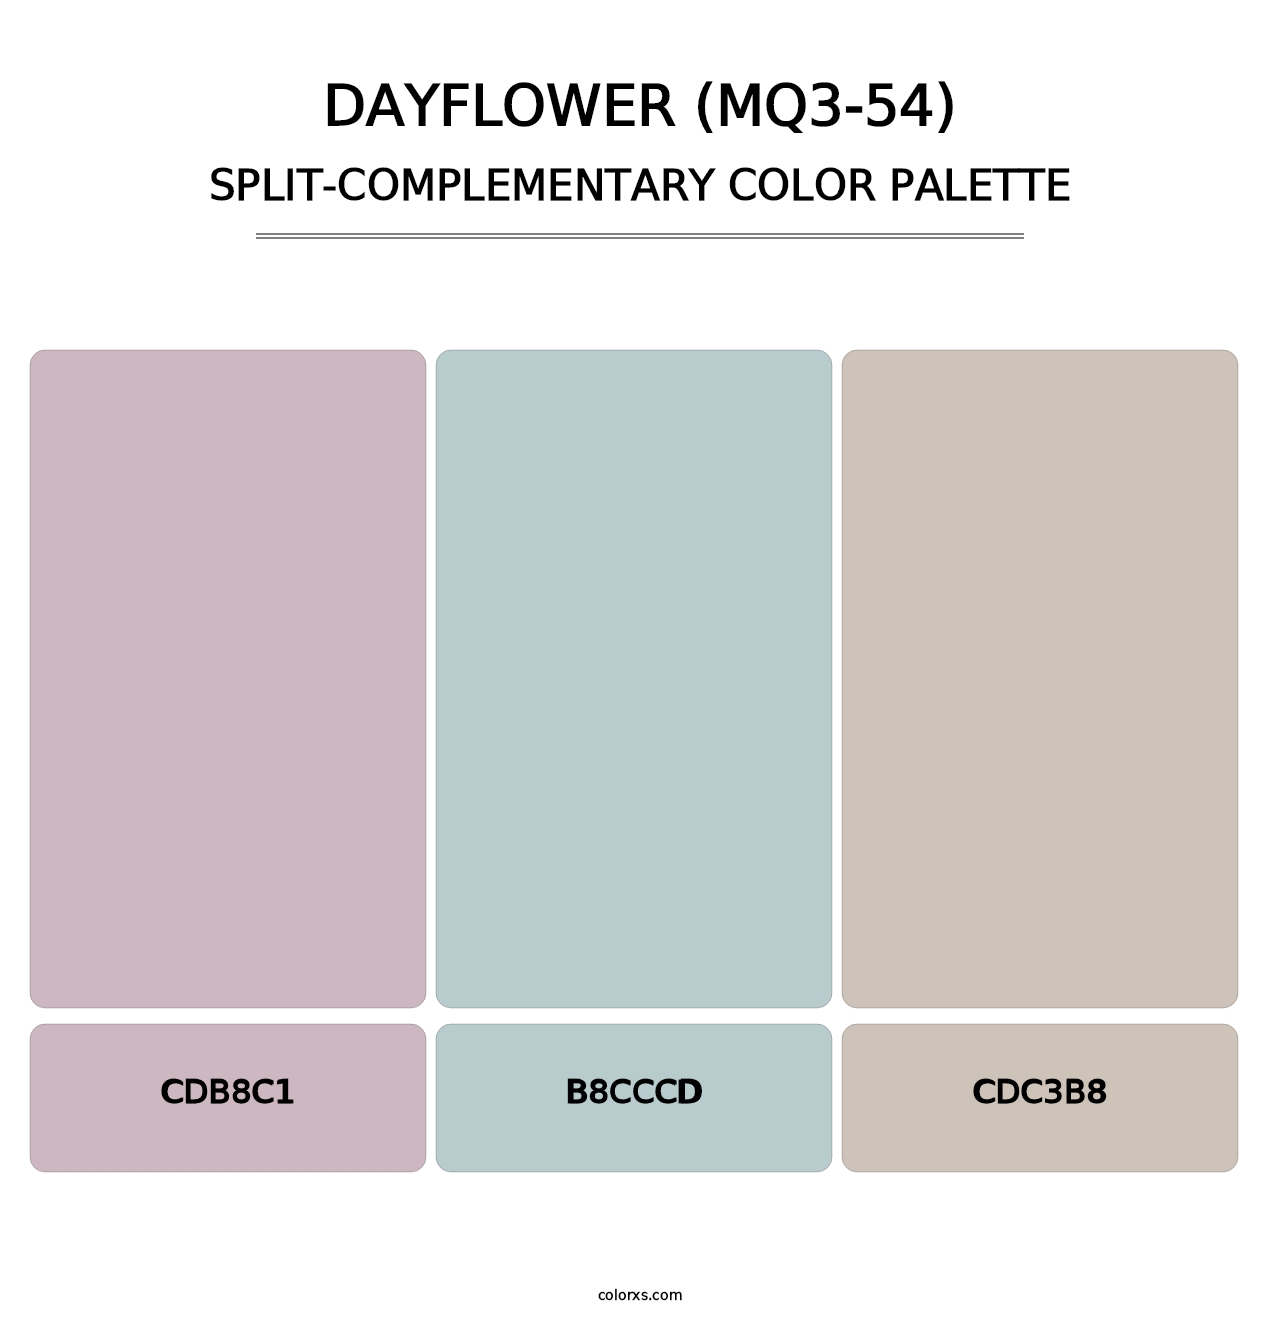 Dayflower (MQ3-54) - Split-Complementary Color Palette